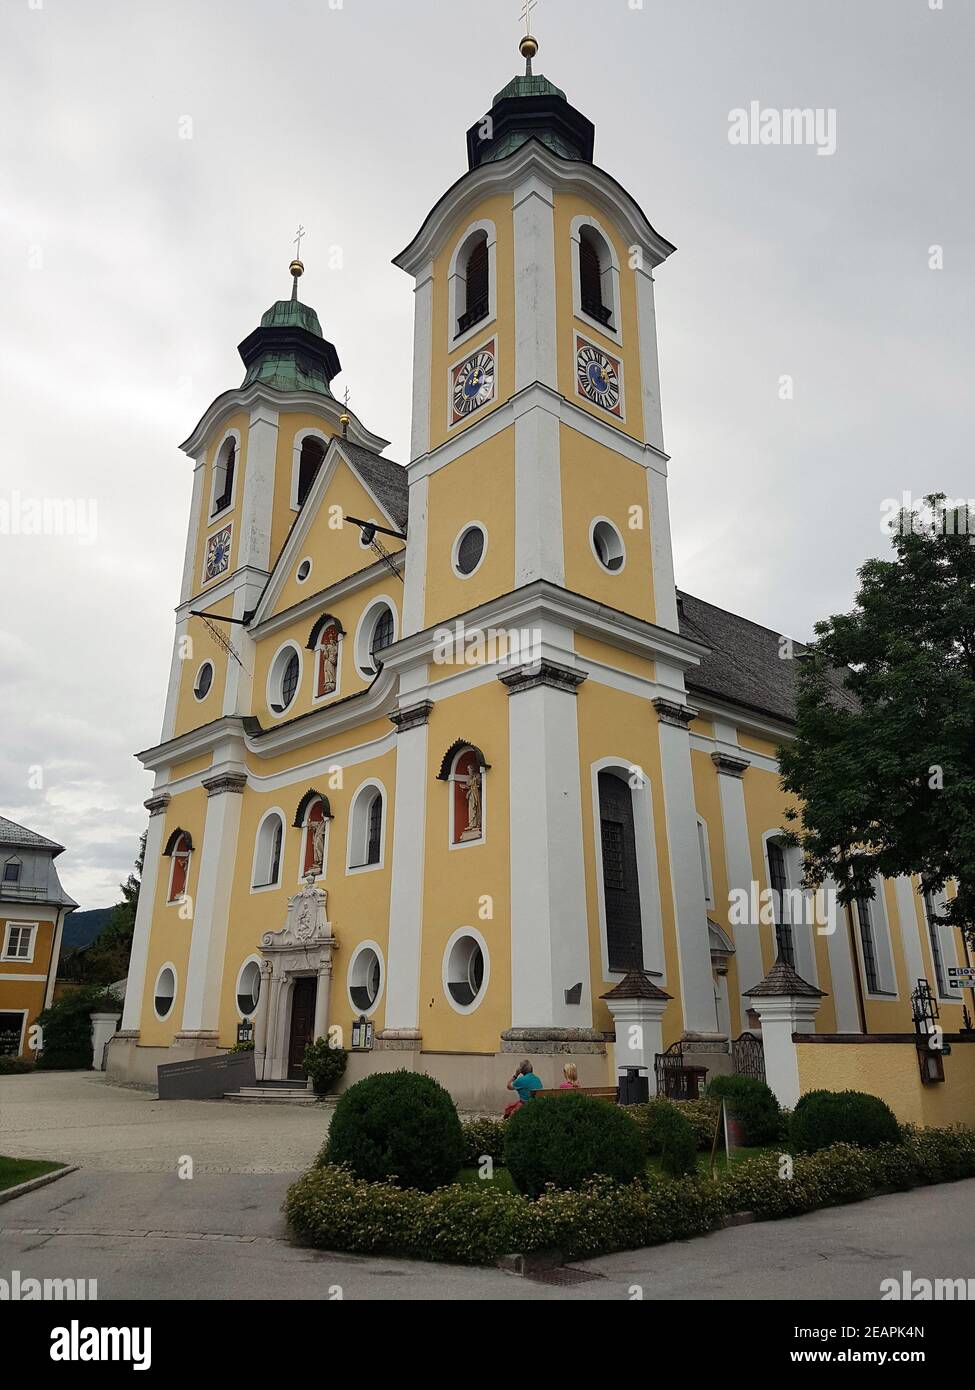 Barrokkirche, Saint Johann, Tirol, Oesterreich Banque D'Images